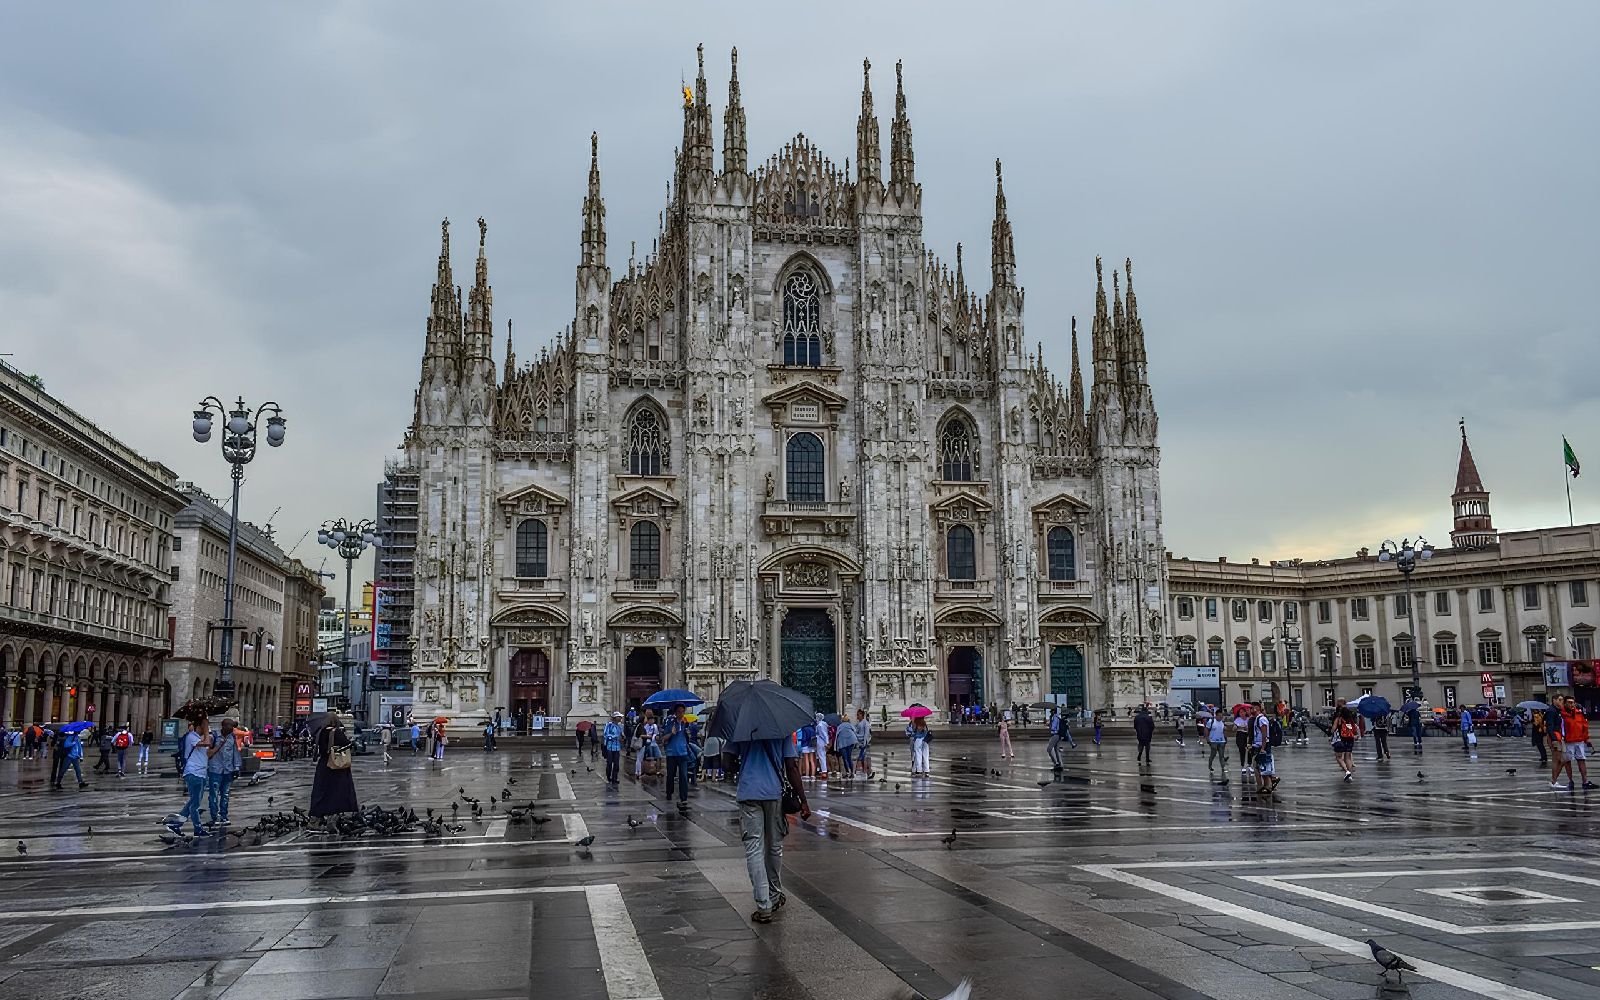 Milan: registered trademark